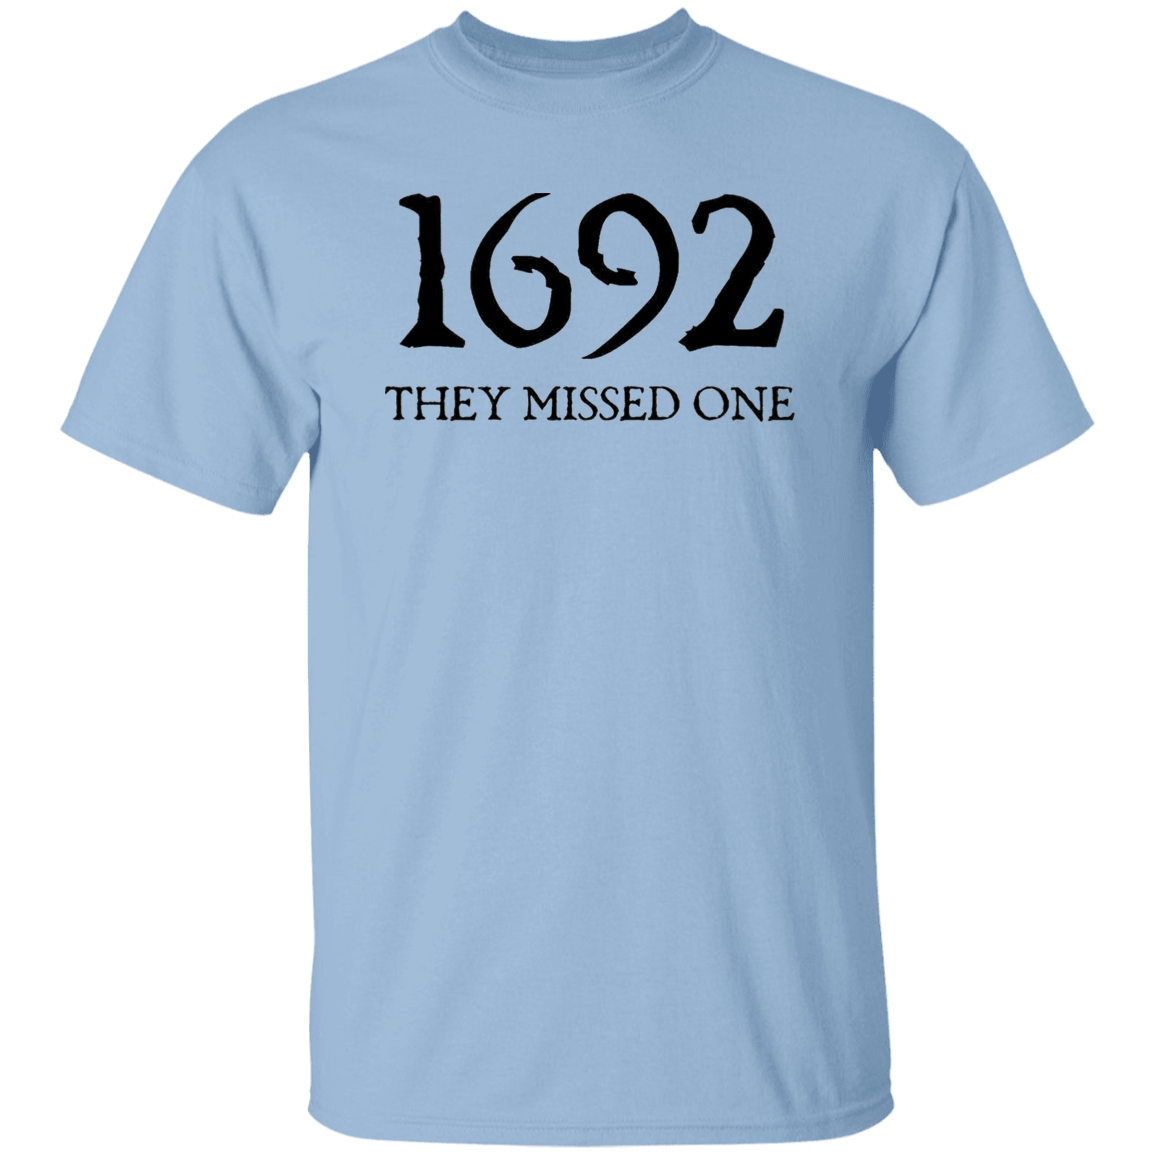 1692...T-Shirt